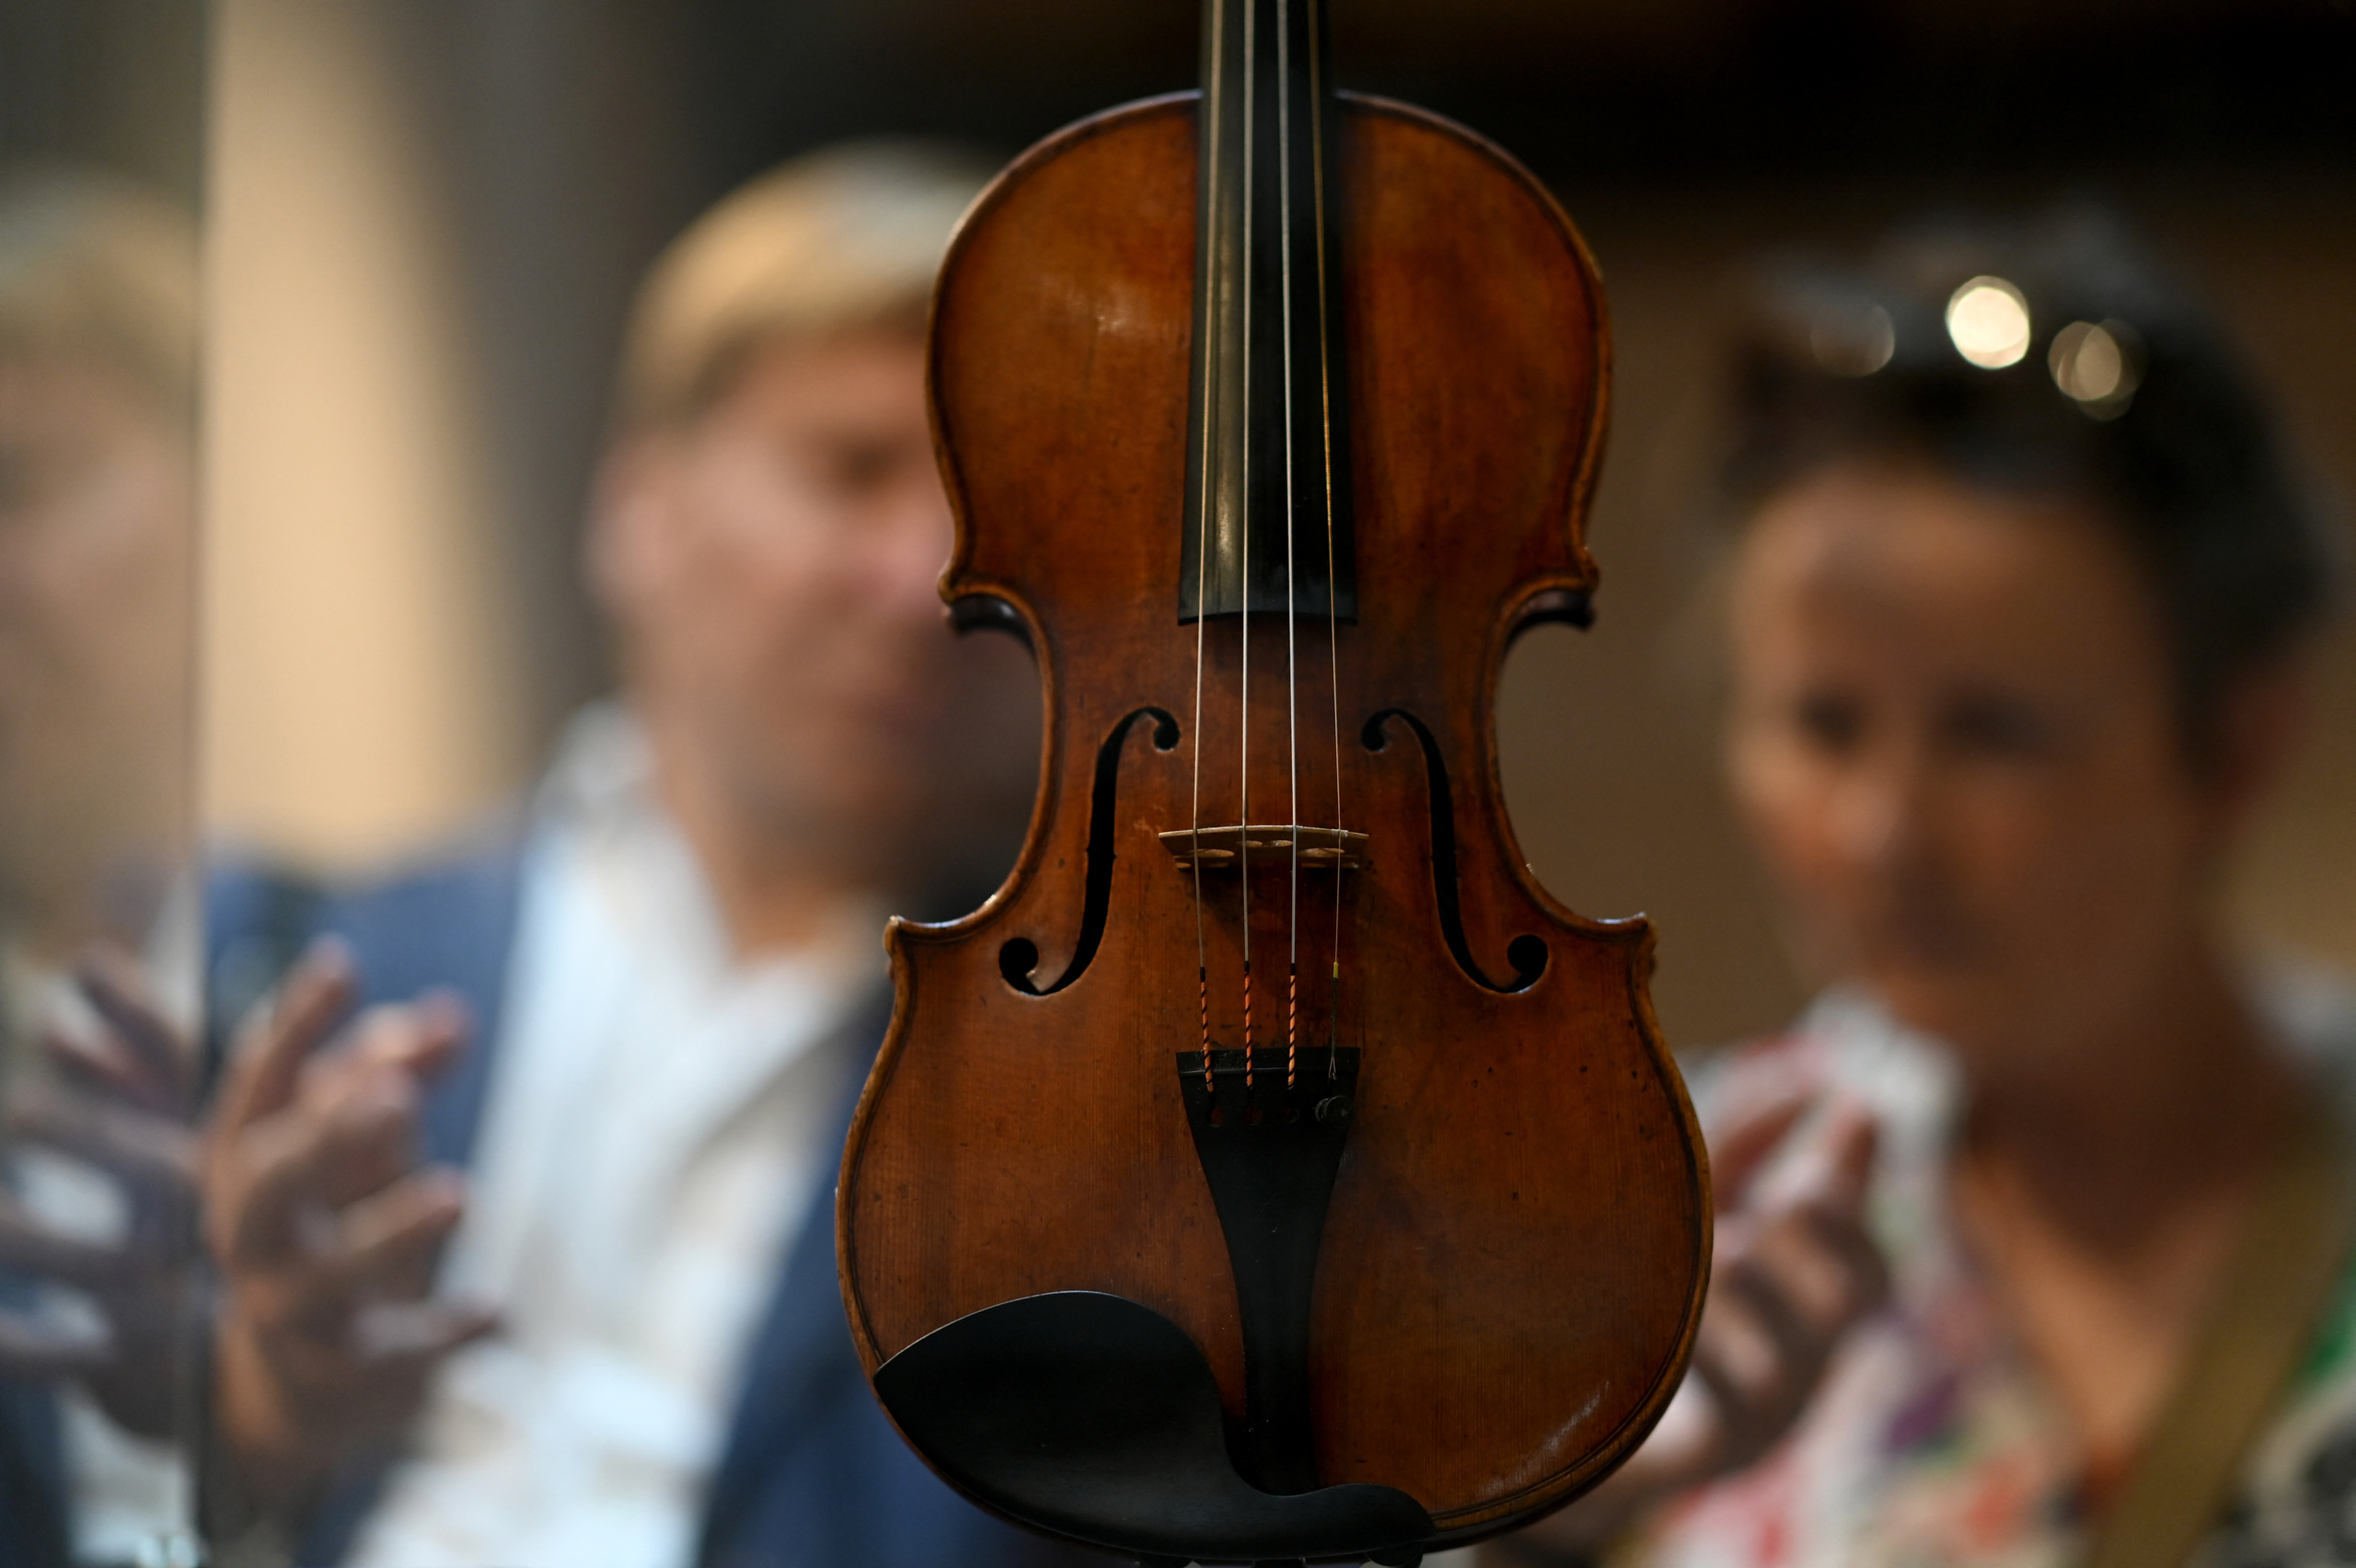 Du khách đang thưởng lãm cây vĩ cầm do nghệ nhân Stradivari chế tác năm 1720 vào hôm 04/07/2023 tại Cremona, Ý, sau khi ngôi nhà của Stradivari mở cửa trở lại. Nhà sản xuất vĩ cầm nổi tiếng Antonio Stradivari đã từng sống và mở xưởng vẽ của mình ở đây vào năm 1667. (Ảnh: Gabriel Bouys/AFP)